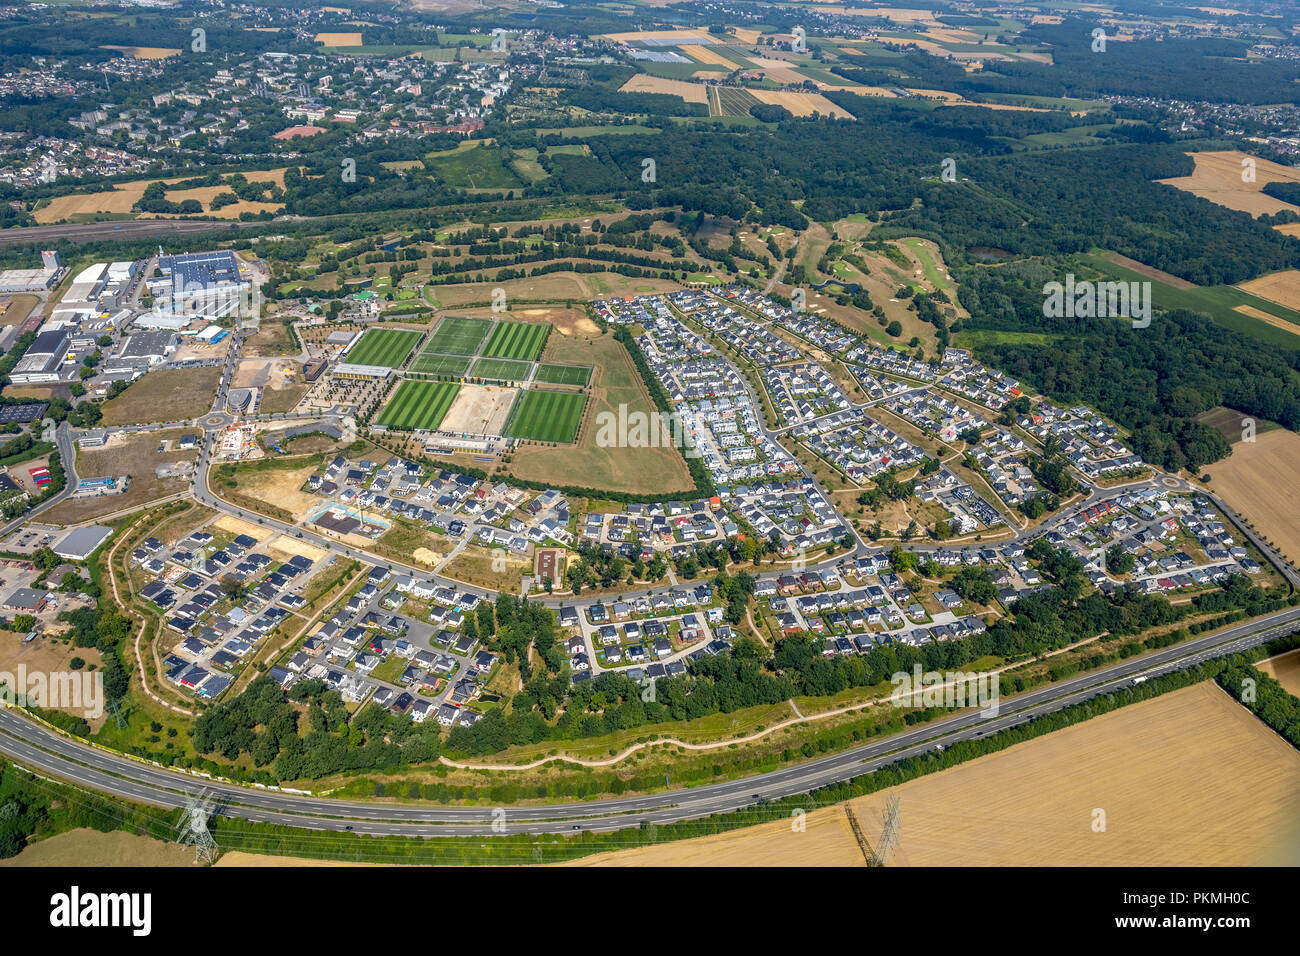 Vista aerea, campo Brackeler, area di costruzione Hohenbuschei, BVB training center, Dortmund, la zona della Ruhr, Renania settentrionale-Vestfalia Foto Stock